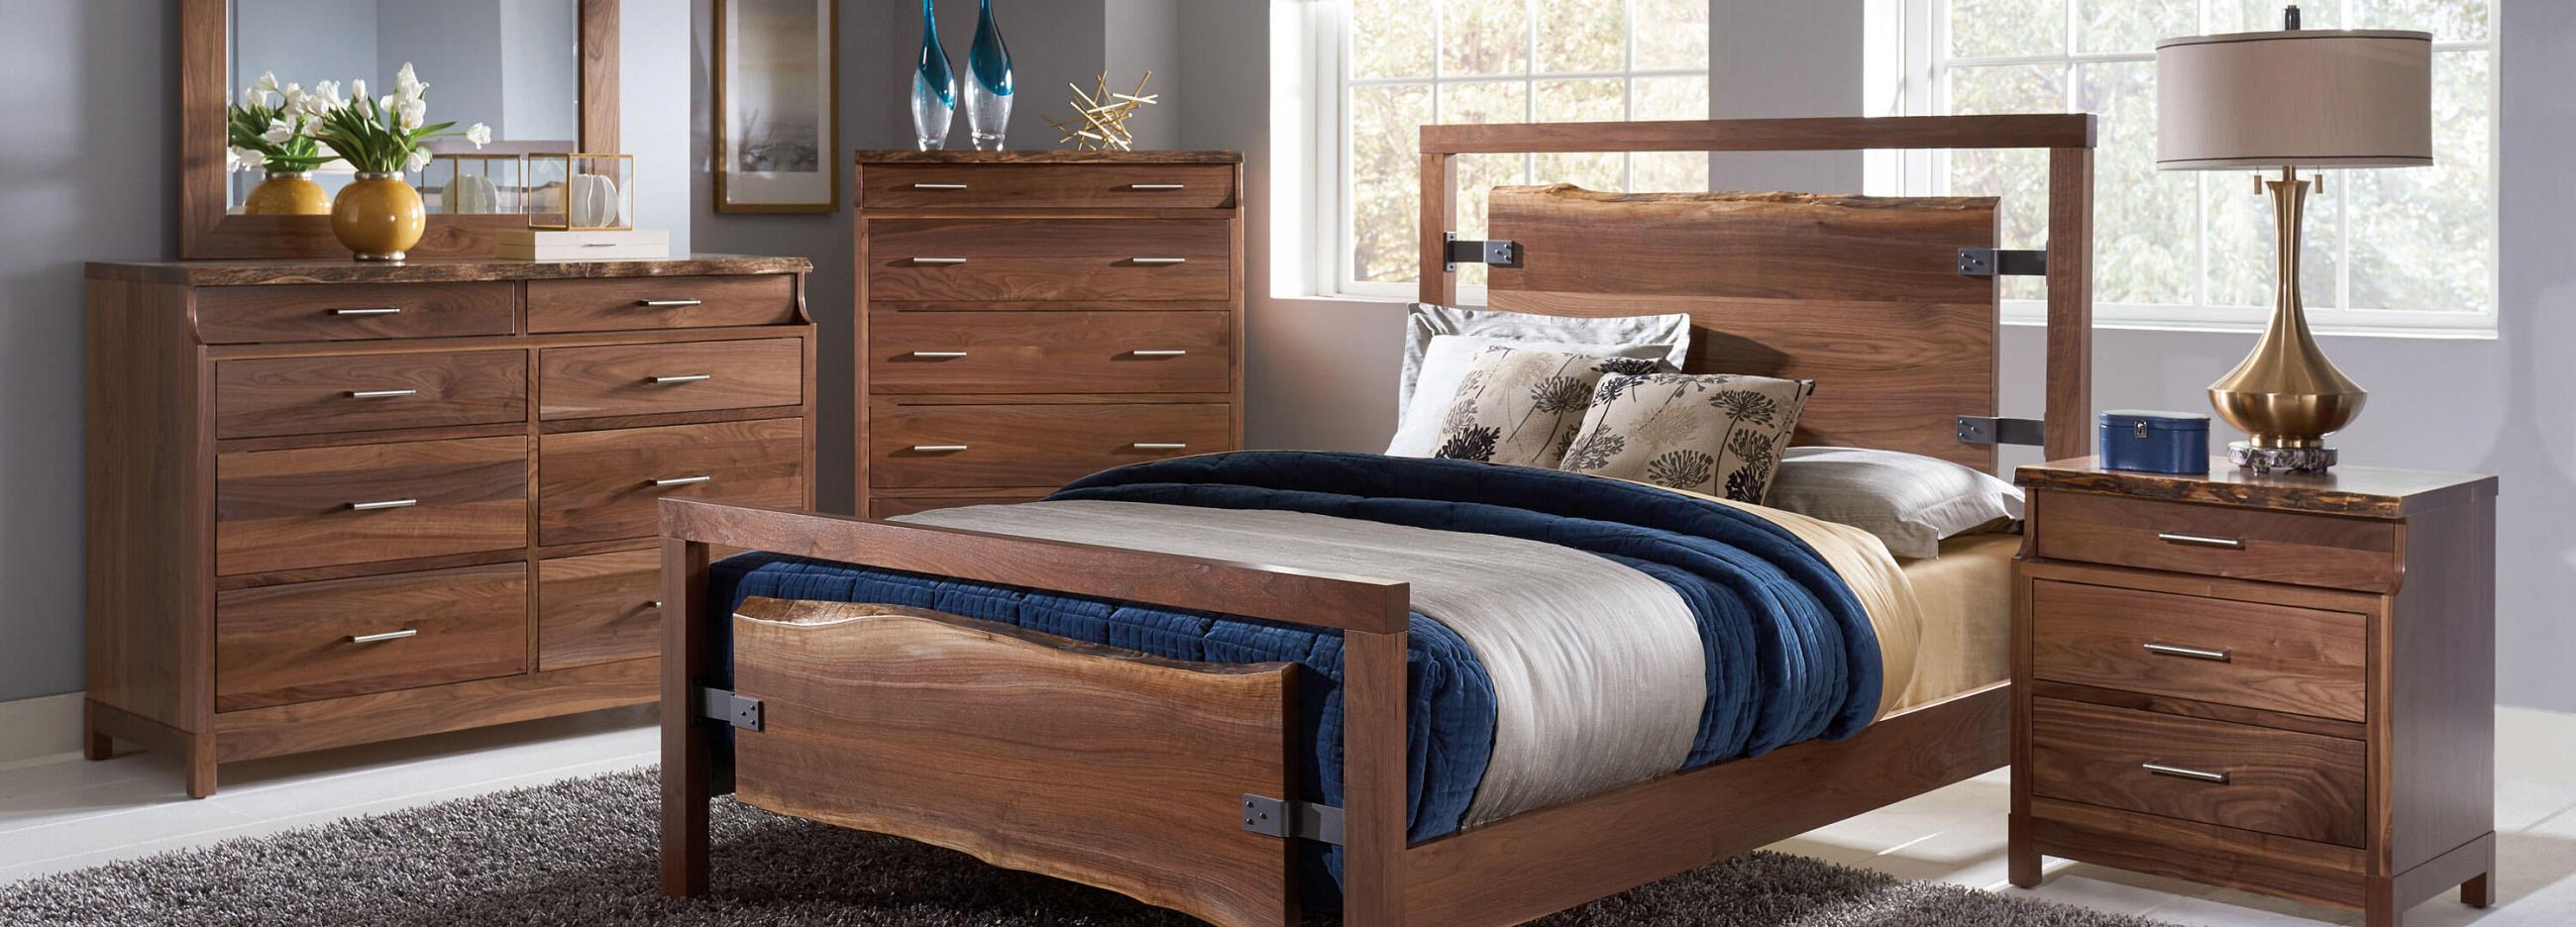 Schwartz Woodworking Bedroom Furniture Collection